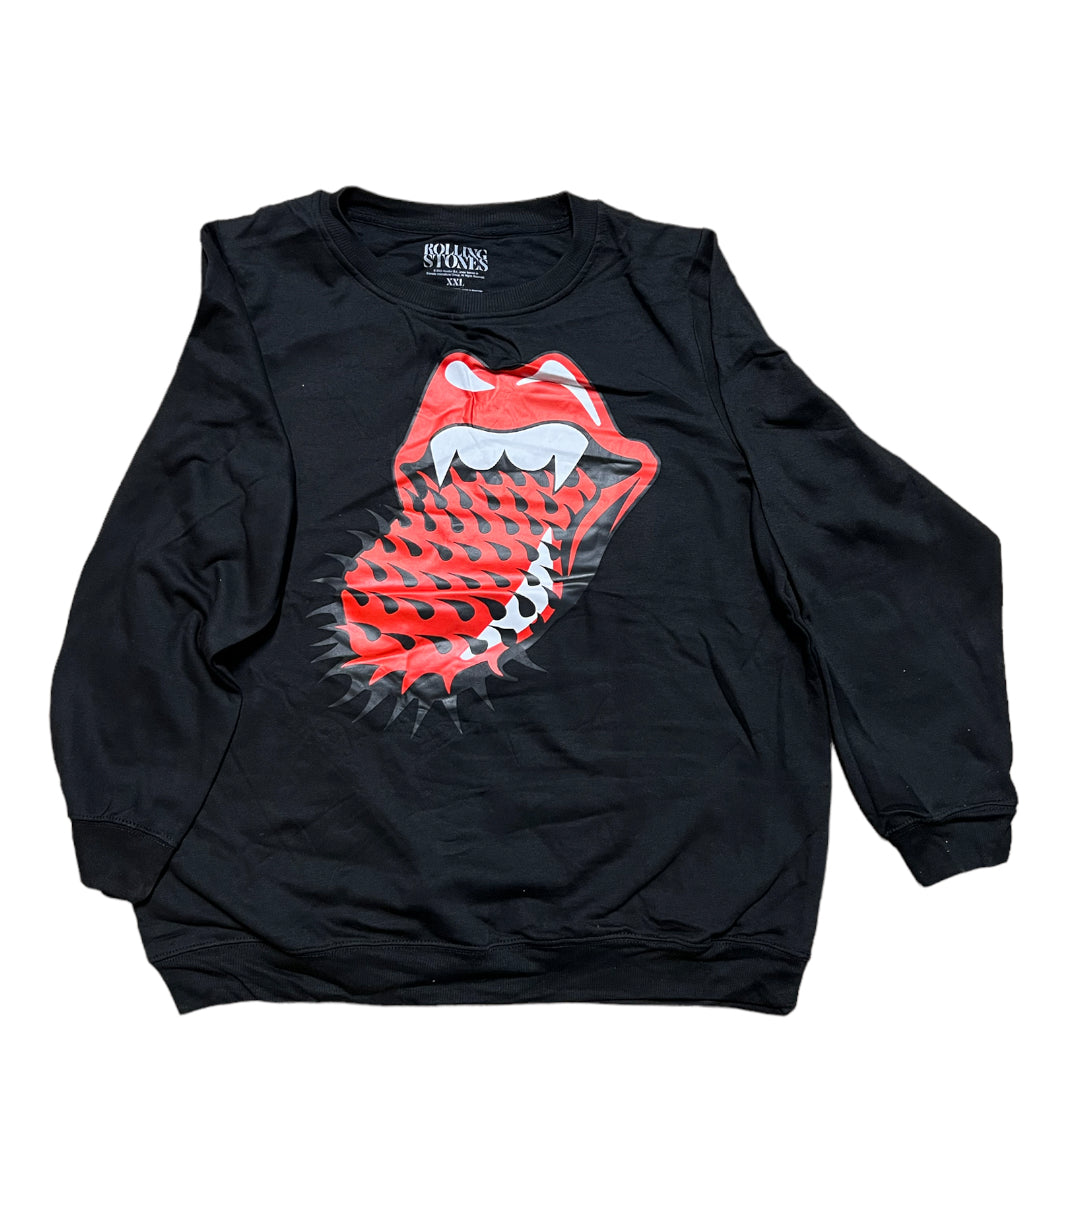 Adult Rolling Stones Crew Neck Black Sweatshirt